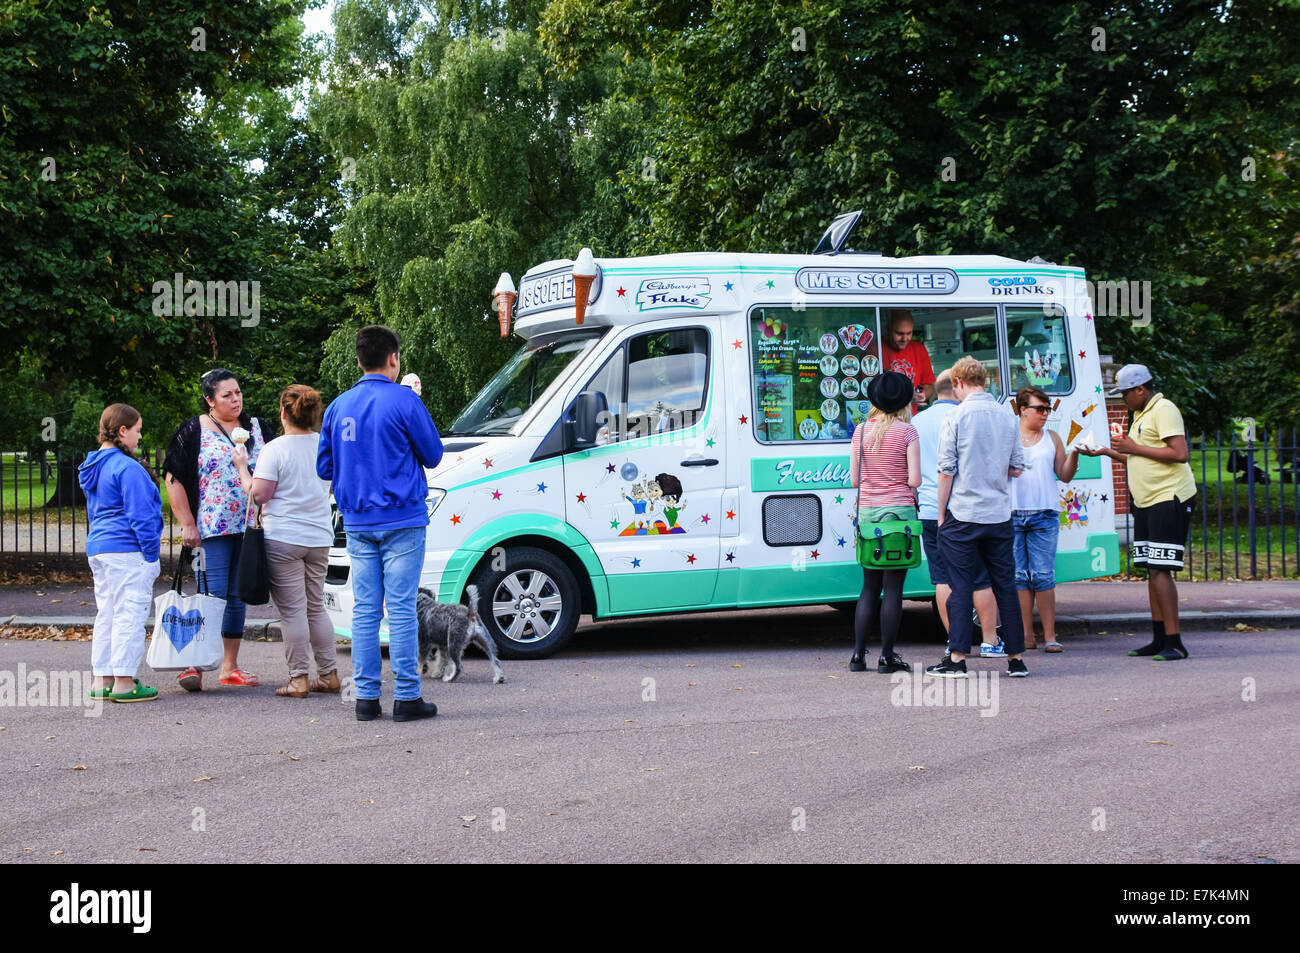 Ice cream van dans le parc Victoria, Londres Angleterre Royaume-Uni UK Banque D'Images